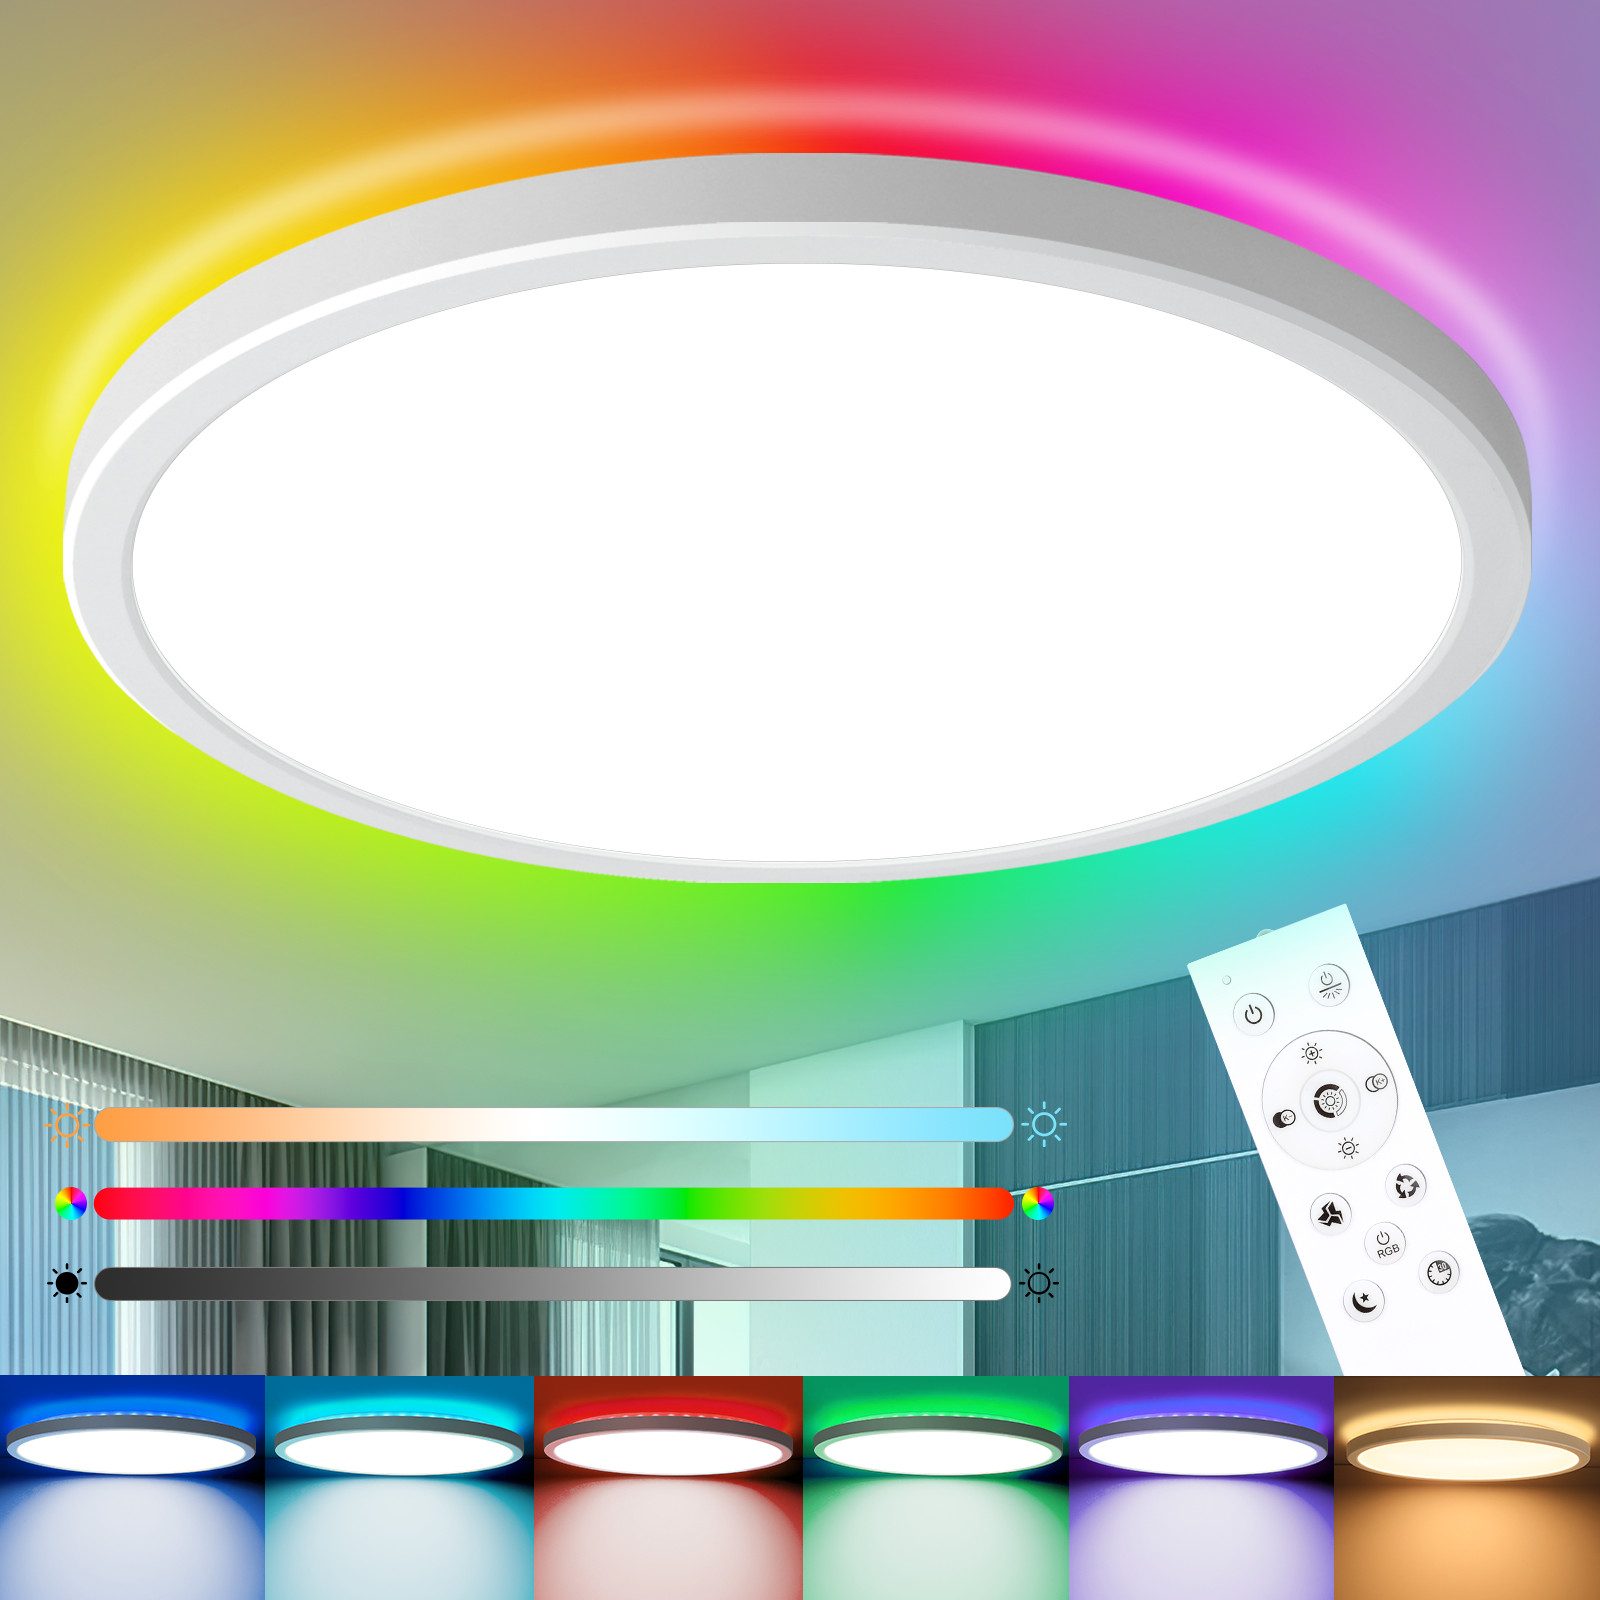 IEGLED LED Deckenleuchte Dimmbare Deckenlampe, 24W, 2400LM, IP44, 3000K-6500K, Farbwechsel, RGB, Wasserdicht, mit Fernbedienung, Energieeffizient, Farbwechsel